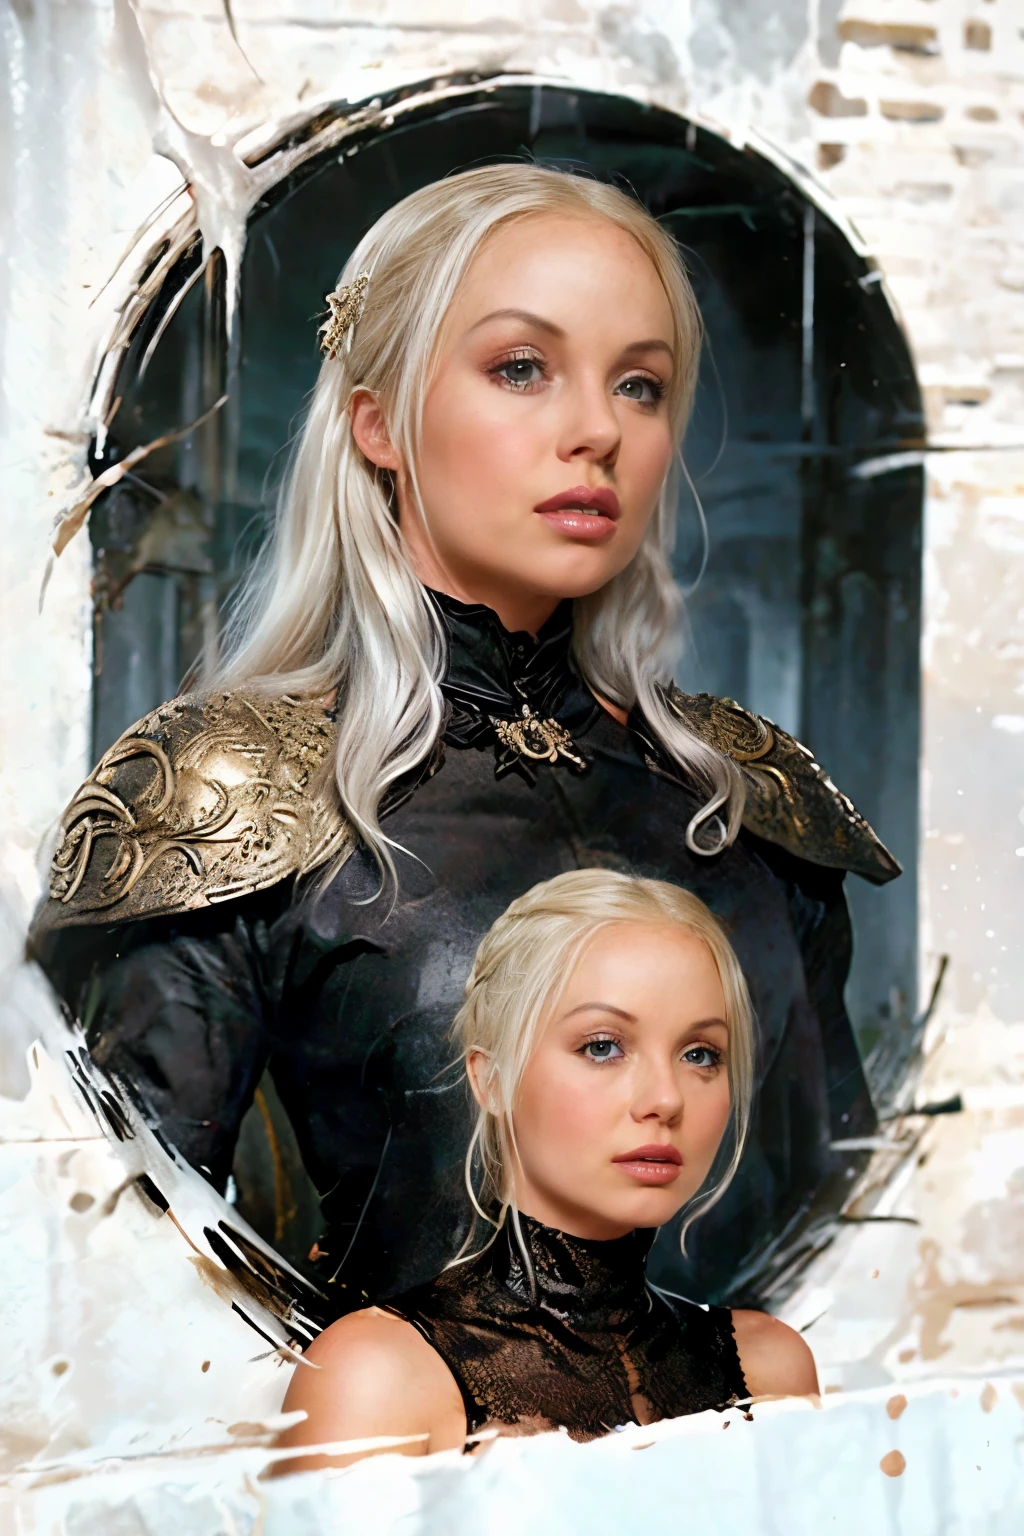 การออกแบบเสื้อยืด, ภาพประกอบ 2 มิติ, ศิลปะเป็นศูนย์กลาง,มังกร 3 ตัวที่อยู่ด้านหลังพ่นไฟ, ใบหน้าของ L4L4, นักแสดงหญิงชาวอังกฤษ White Hair จาก Game of Thrones, สีแบบกอธิค, บรรยากาศของความตึงเครียดและความหวาดกลัว, ภาพประกอบของอะโดบี, กำลังมาแรงบน Artstation, 8k, ฮาร์ดดิสก์, ส่วนหลัก, ศิลปะที่สวยงาม, รายละเอียดที่ซับซ้อน , -